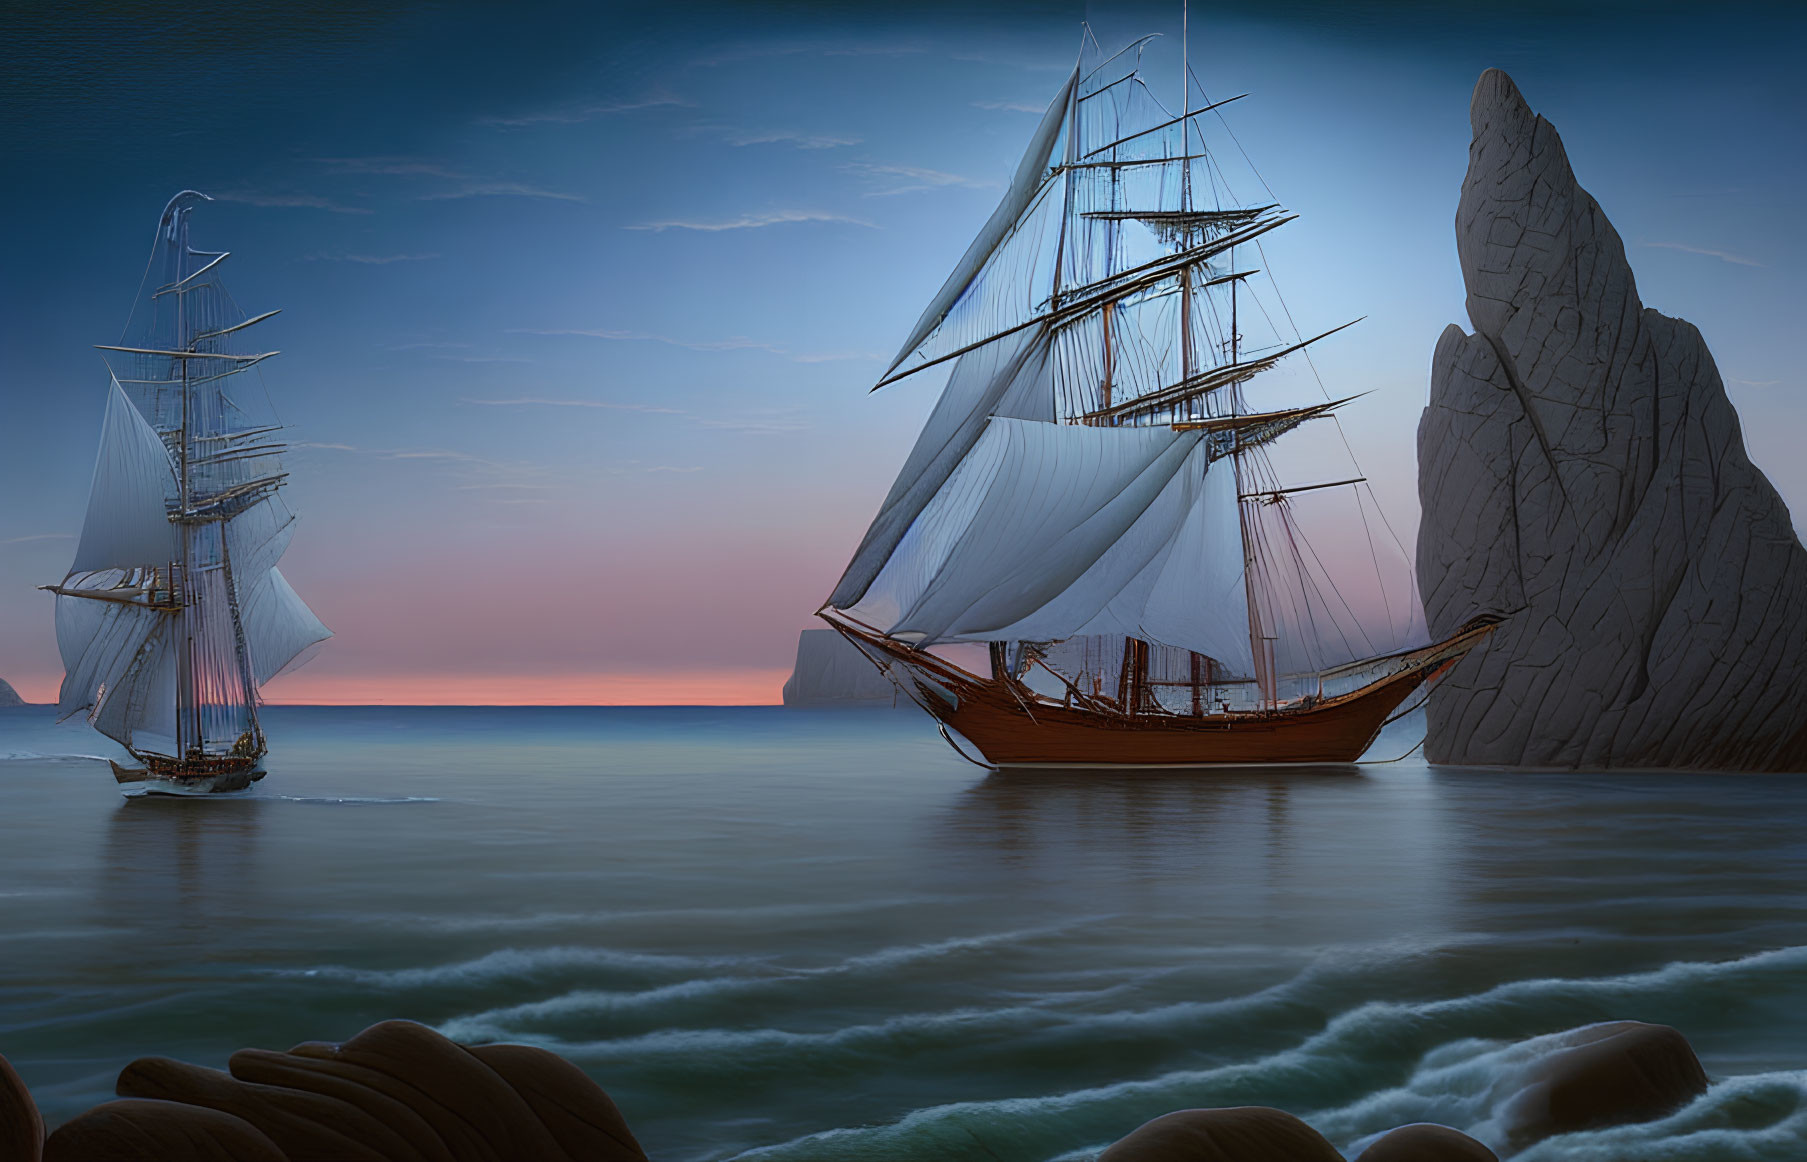 Sailing ship with billowing sails near rock formation at sea at sunset